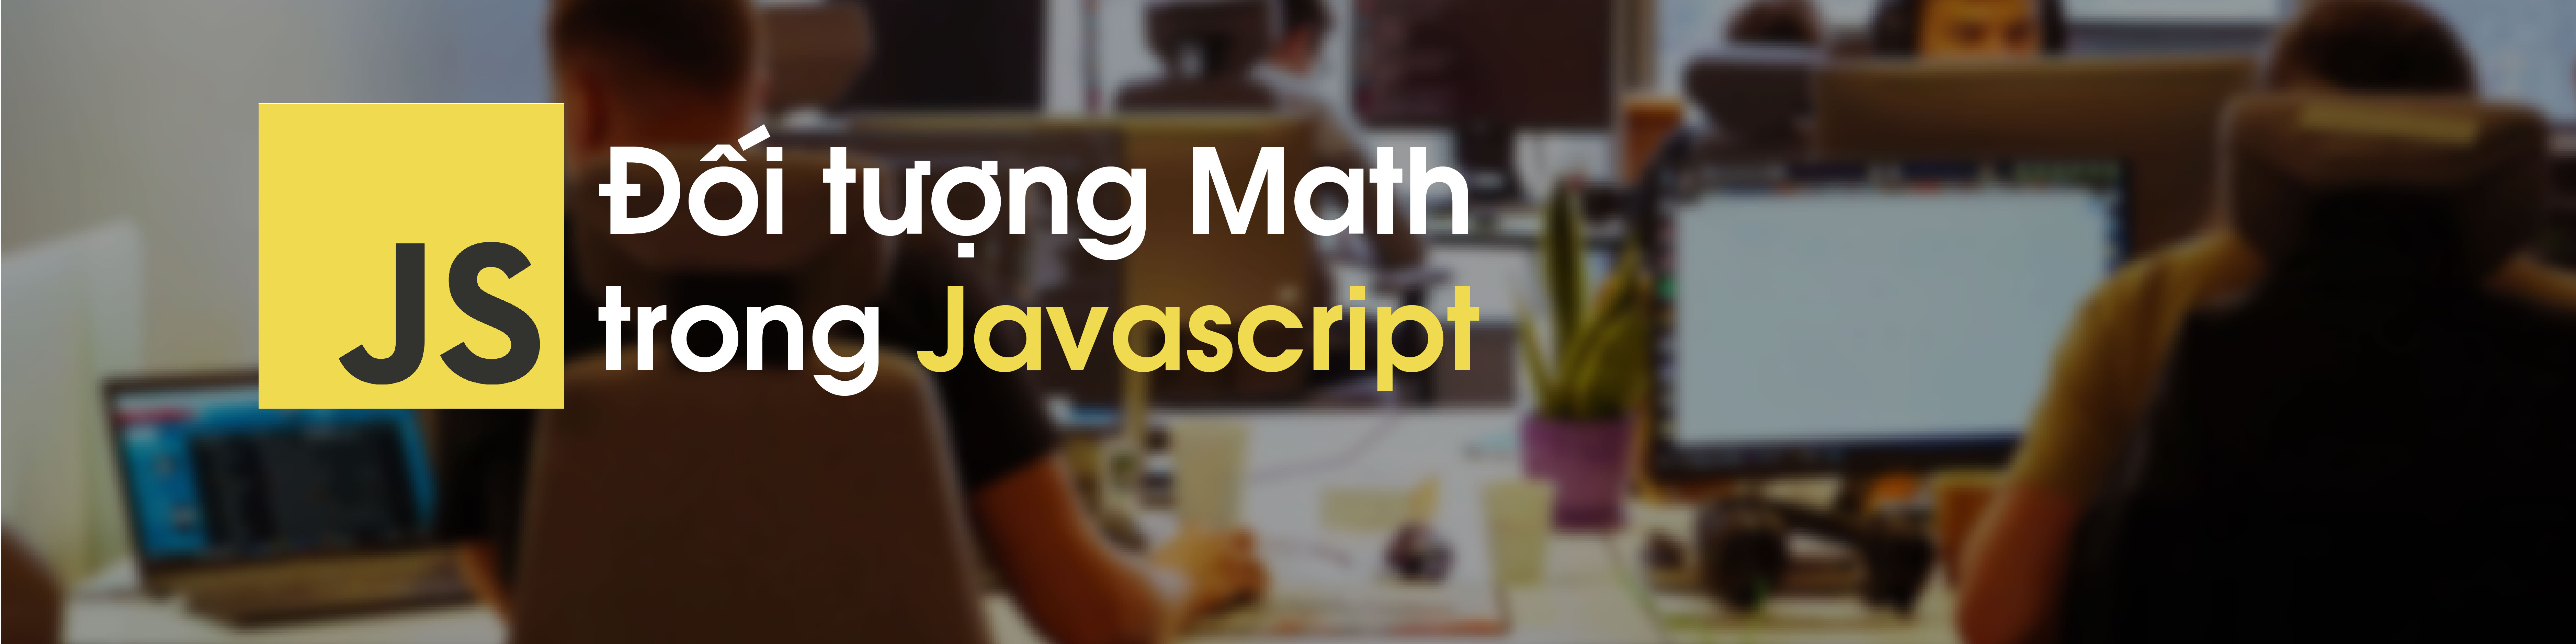 Tìm hiểu về đối tượng Math trong Javascript